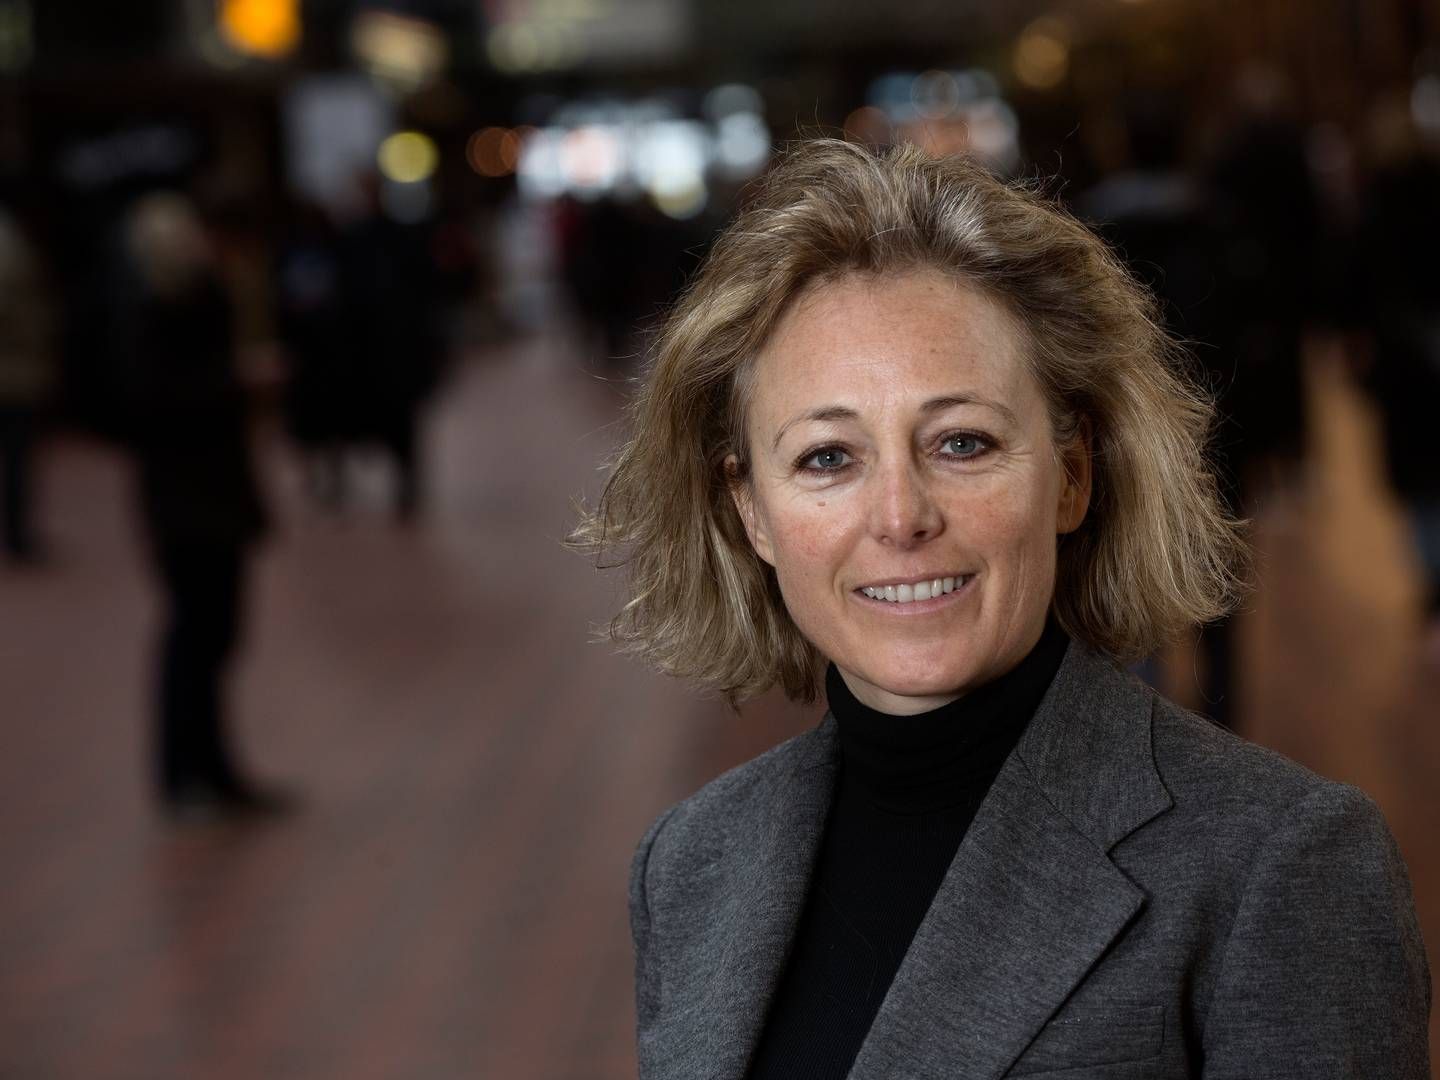 DSB har skabt rammerne for et vækstlag af kvindelige ledere, skriver HR-direktør Tine Moe Svendsen i dette debatindlæg. | Foto: Pr / Dsb